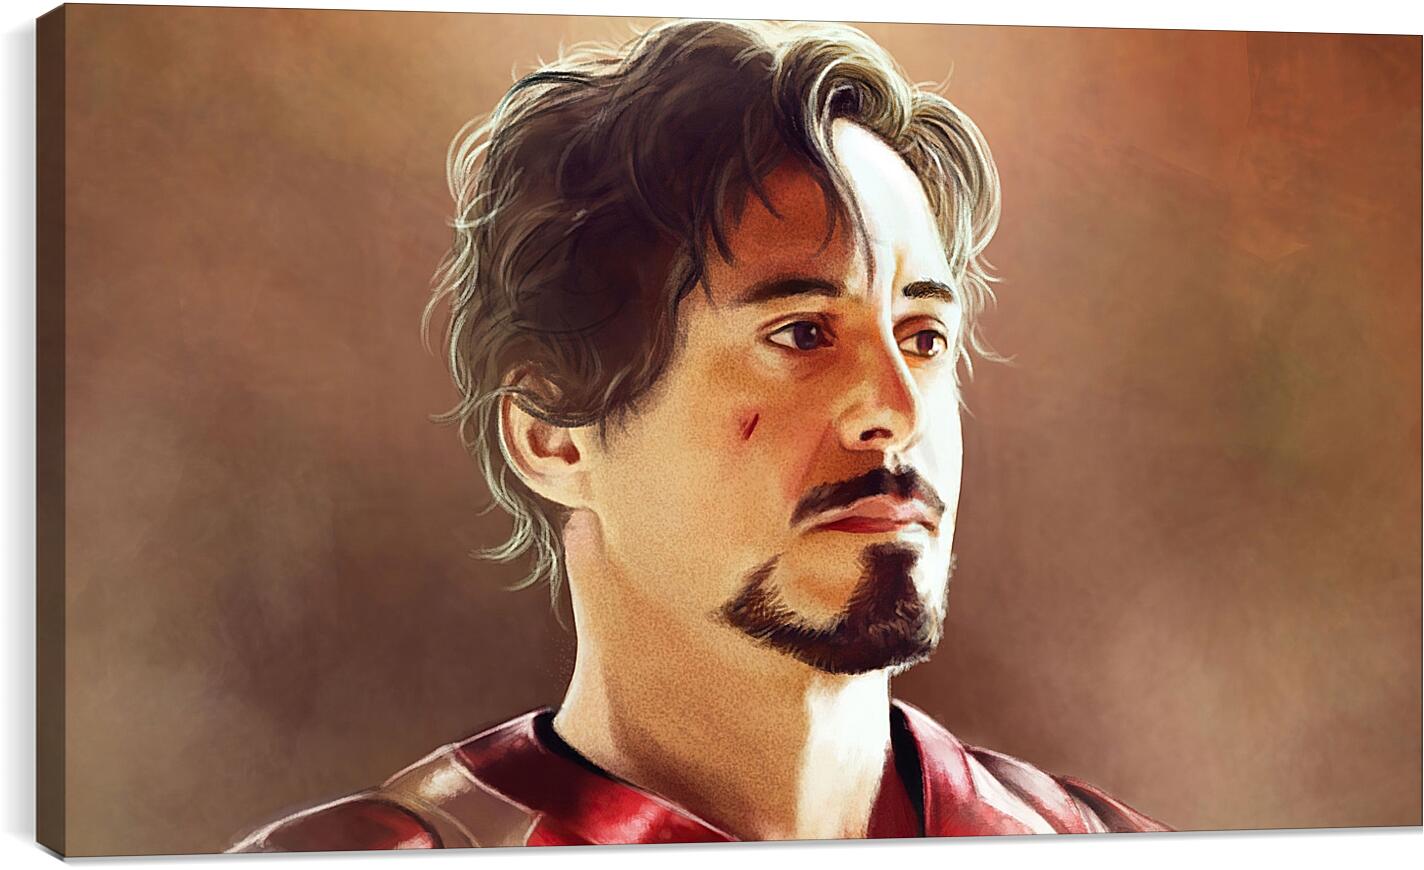 Постер и плакат - Железный человек. Iron Man